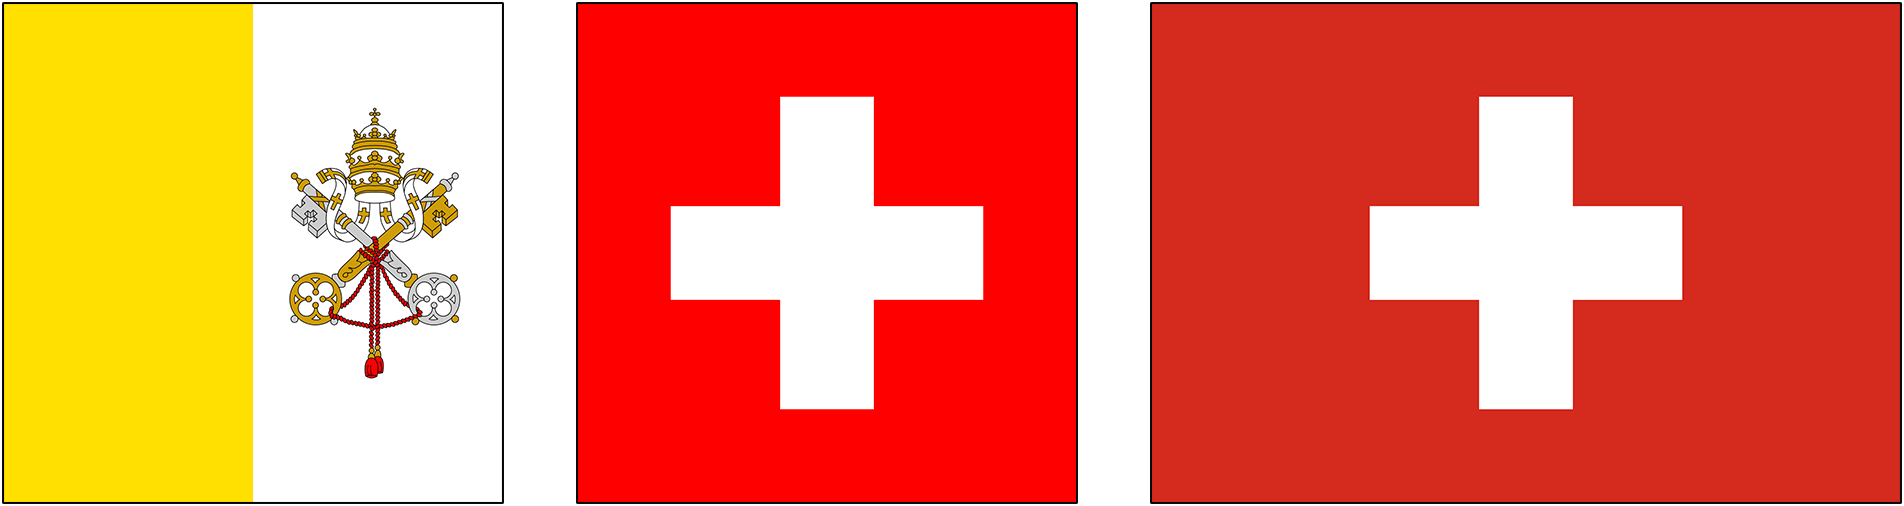 Прапор Ватикану та прапори Швейцарії